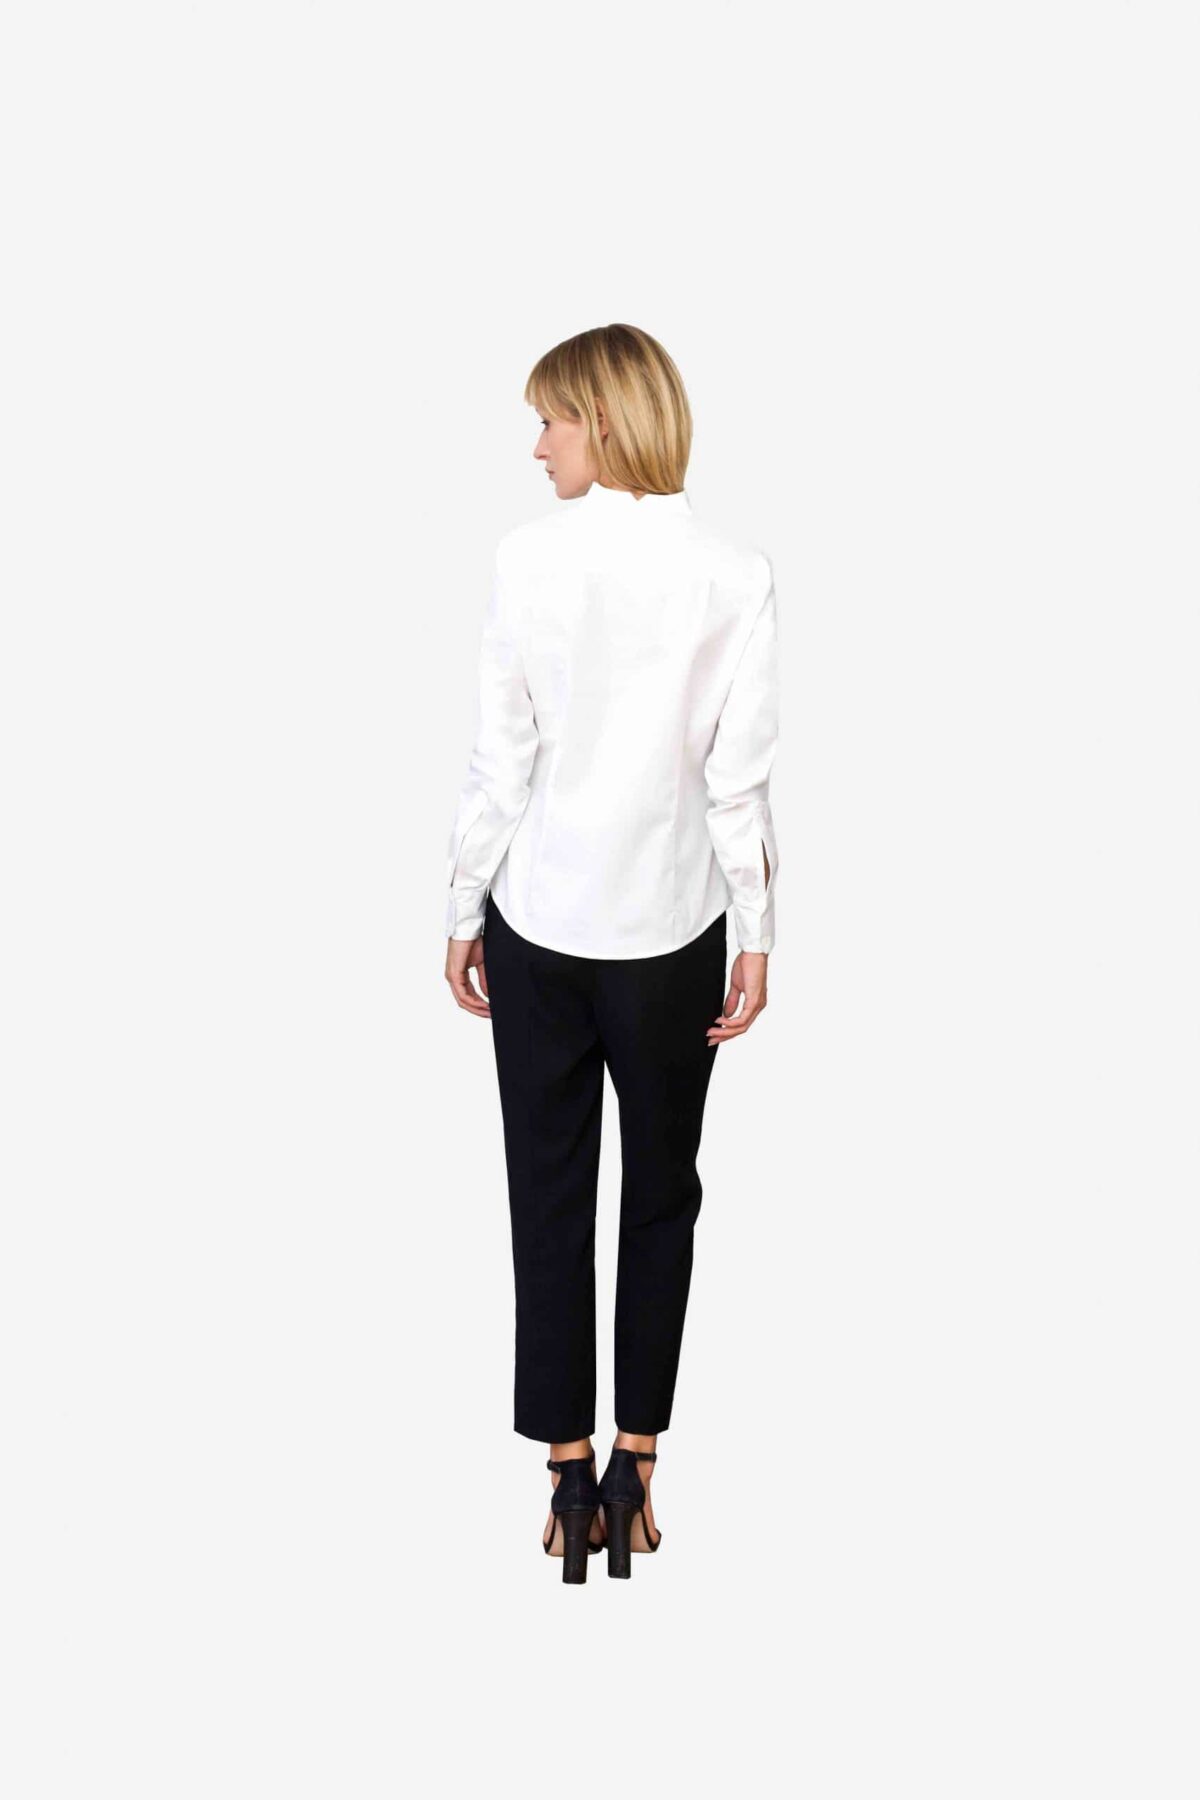 Bluse Sheirlyn von SANOGE. Stilvolle Designer Business Bluse in weiß mit Kelchkragen. Stehkragen. und Umschlagmanschetten. Mode aus Deutschland.